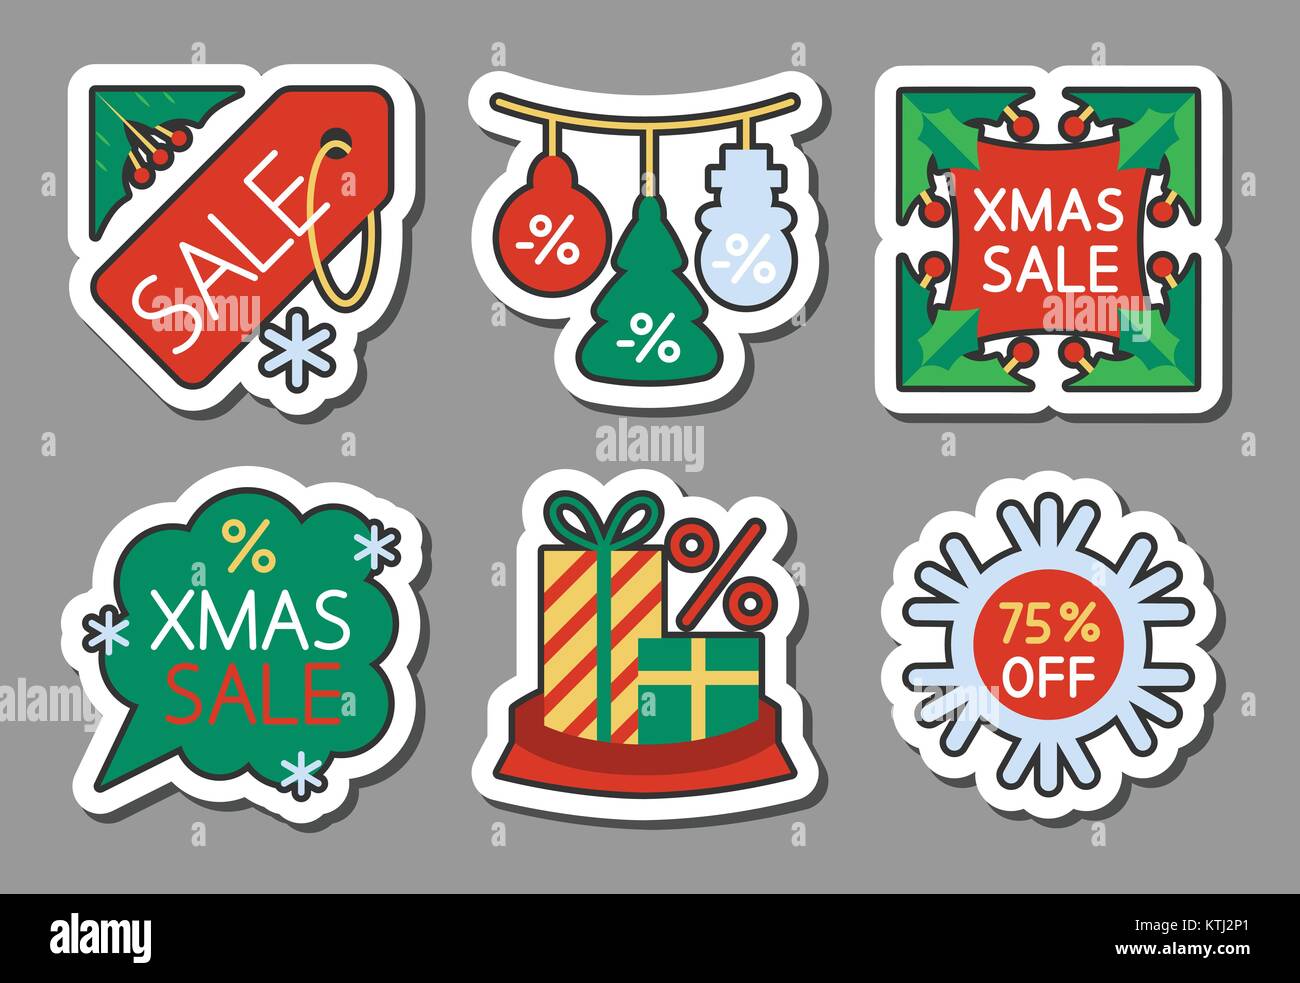 Weihnachtszeit Verkauf icon Sticker Set. Neues Jahr Flat Style Farbe Spiel Abzeichen, Web, Werbung, Banner, Wirtschaft, Emblem, Drucken, tag, ad, Aufkleber, Poster, Coup Stock Vektor